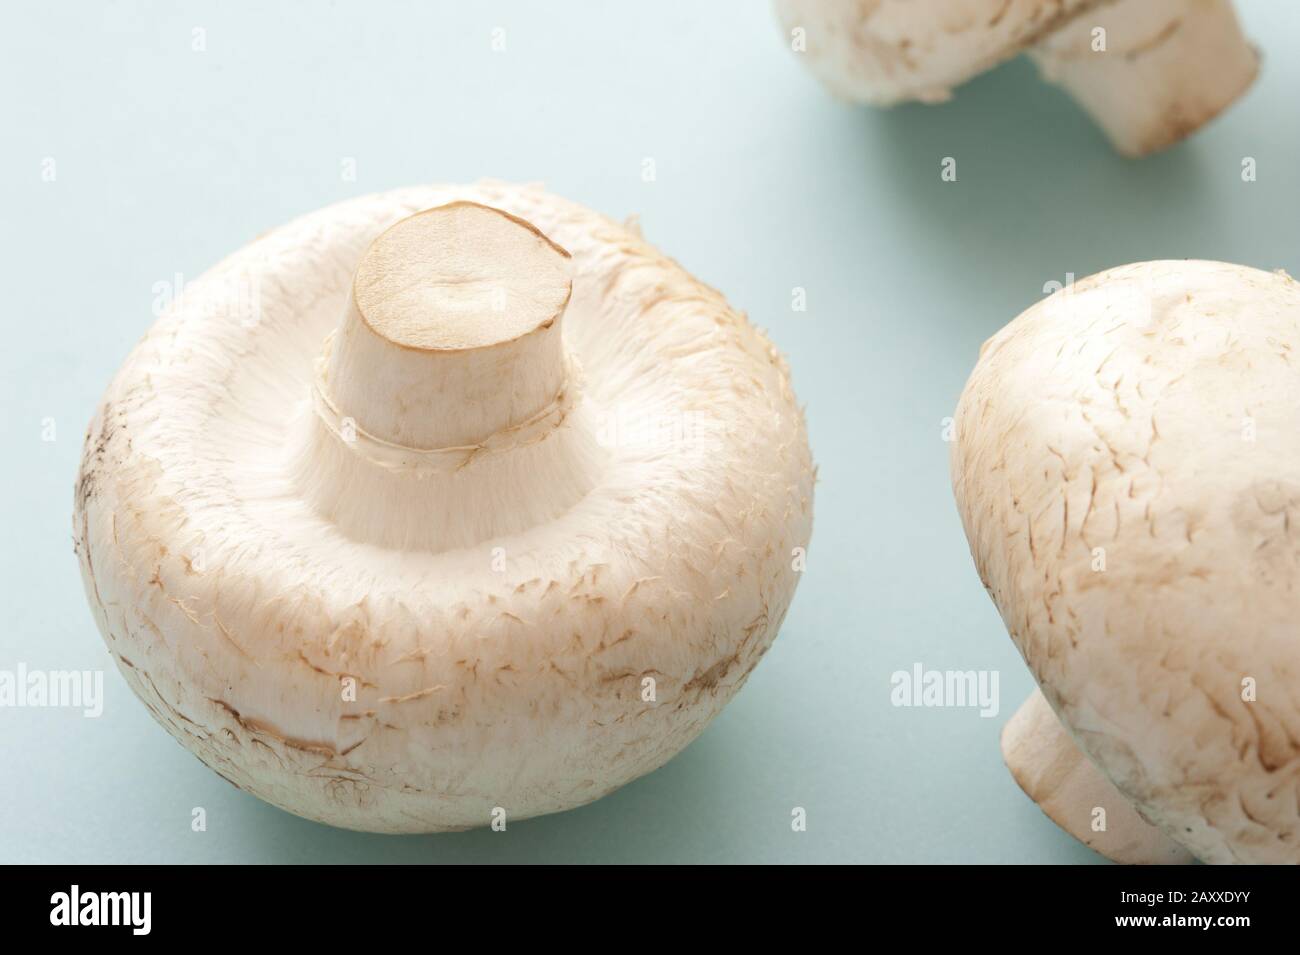 Deux champignons Agaricus bisporus frais, les champignons les plus cultivés du marché largement utilisés dans la cuisine salée Banque D'Images